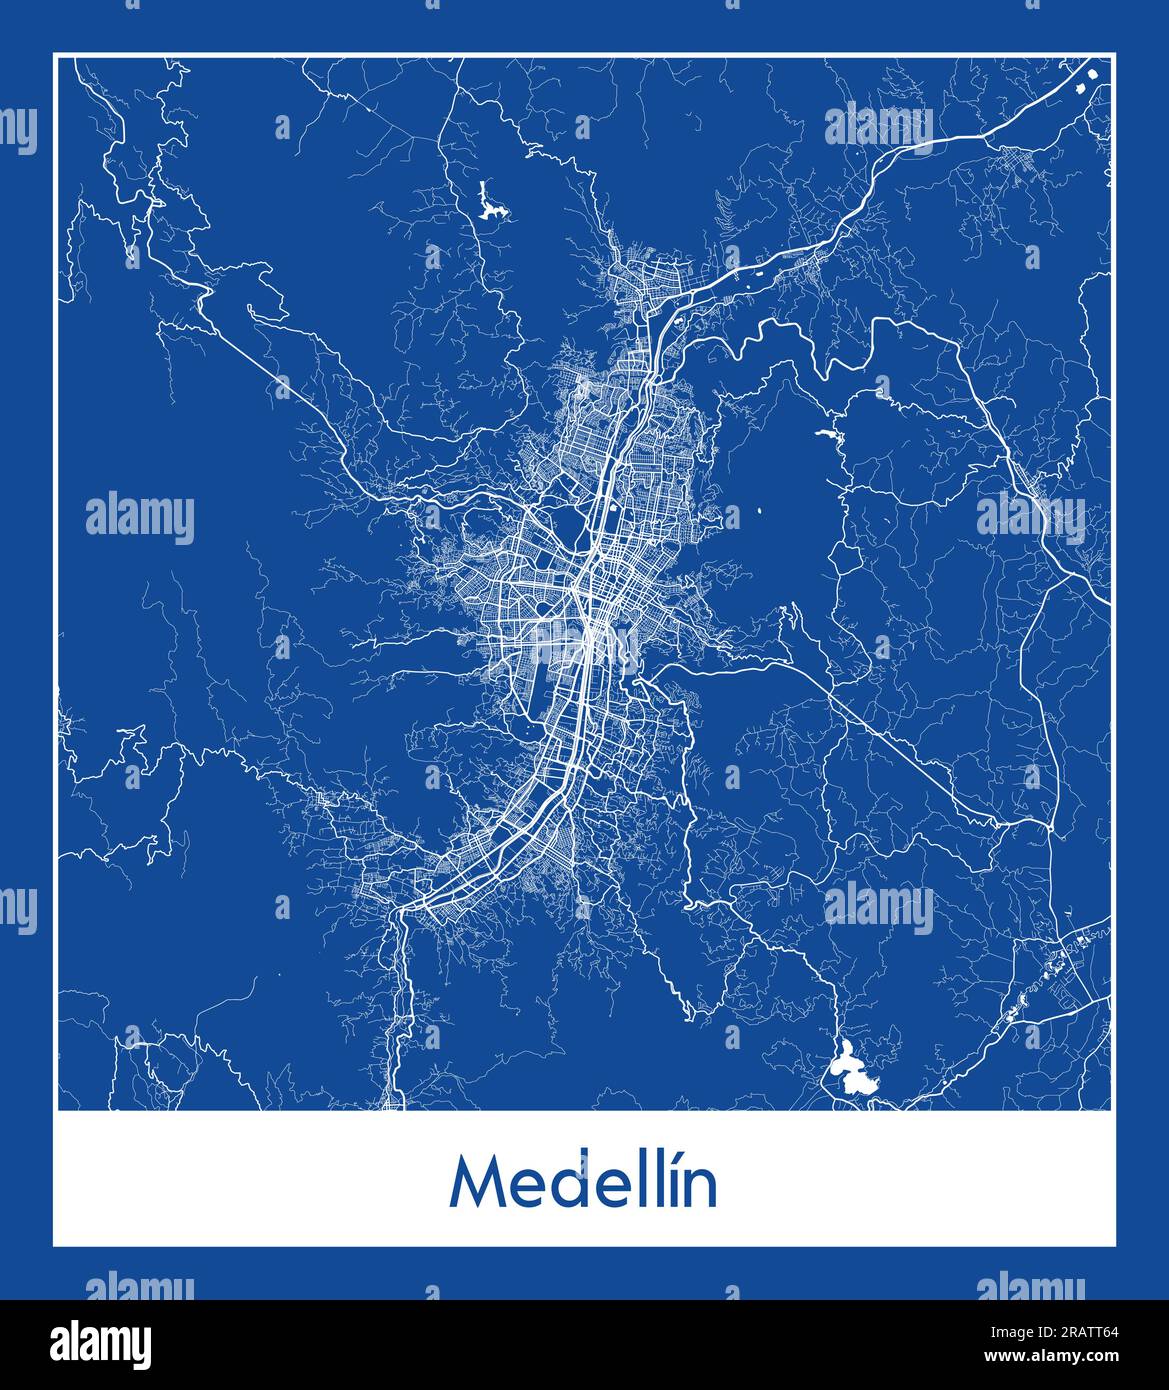 Medellin Colombie Amérique du Sud carte de la ville bleu illustration vectorielle Illustration de Vecteur